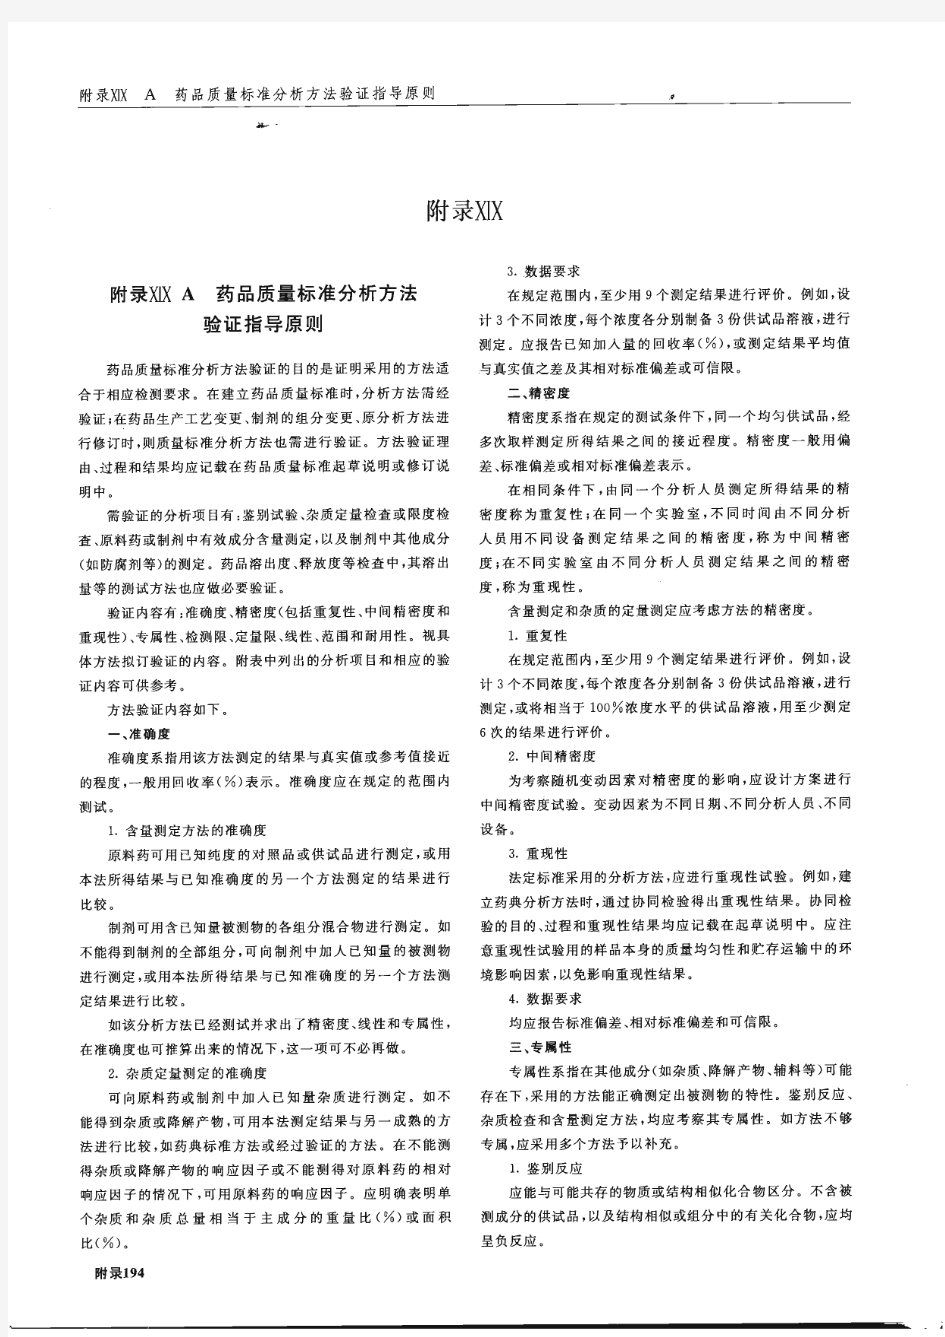 《中国药典》2010年版2部-方法验证